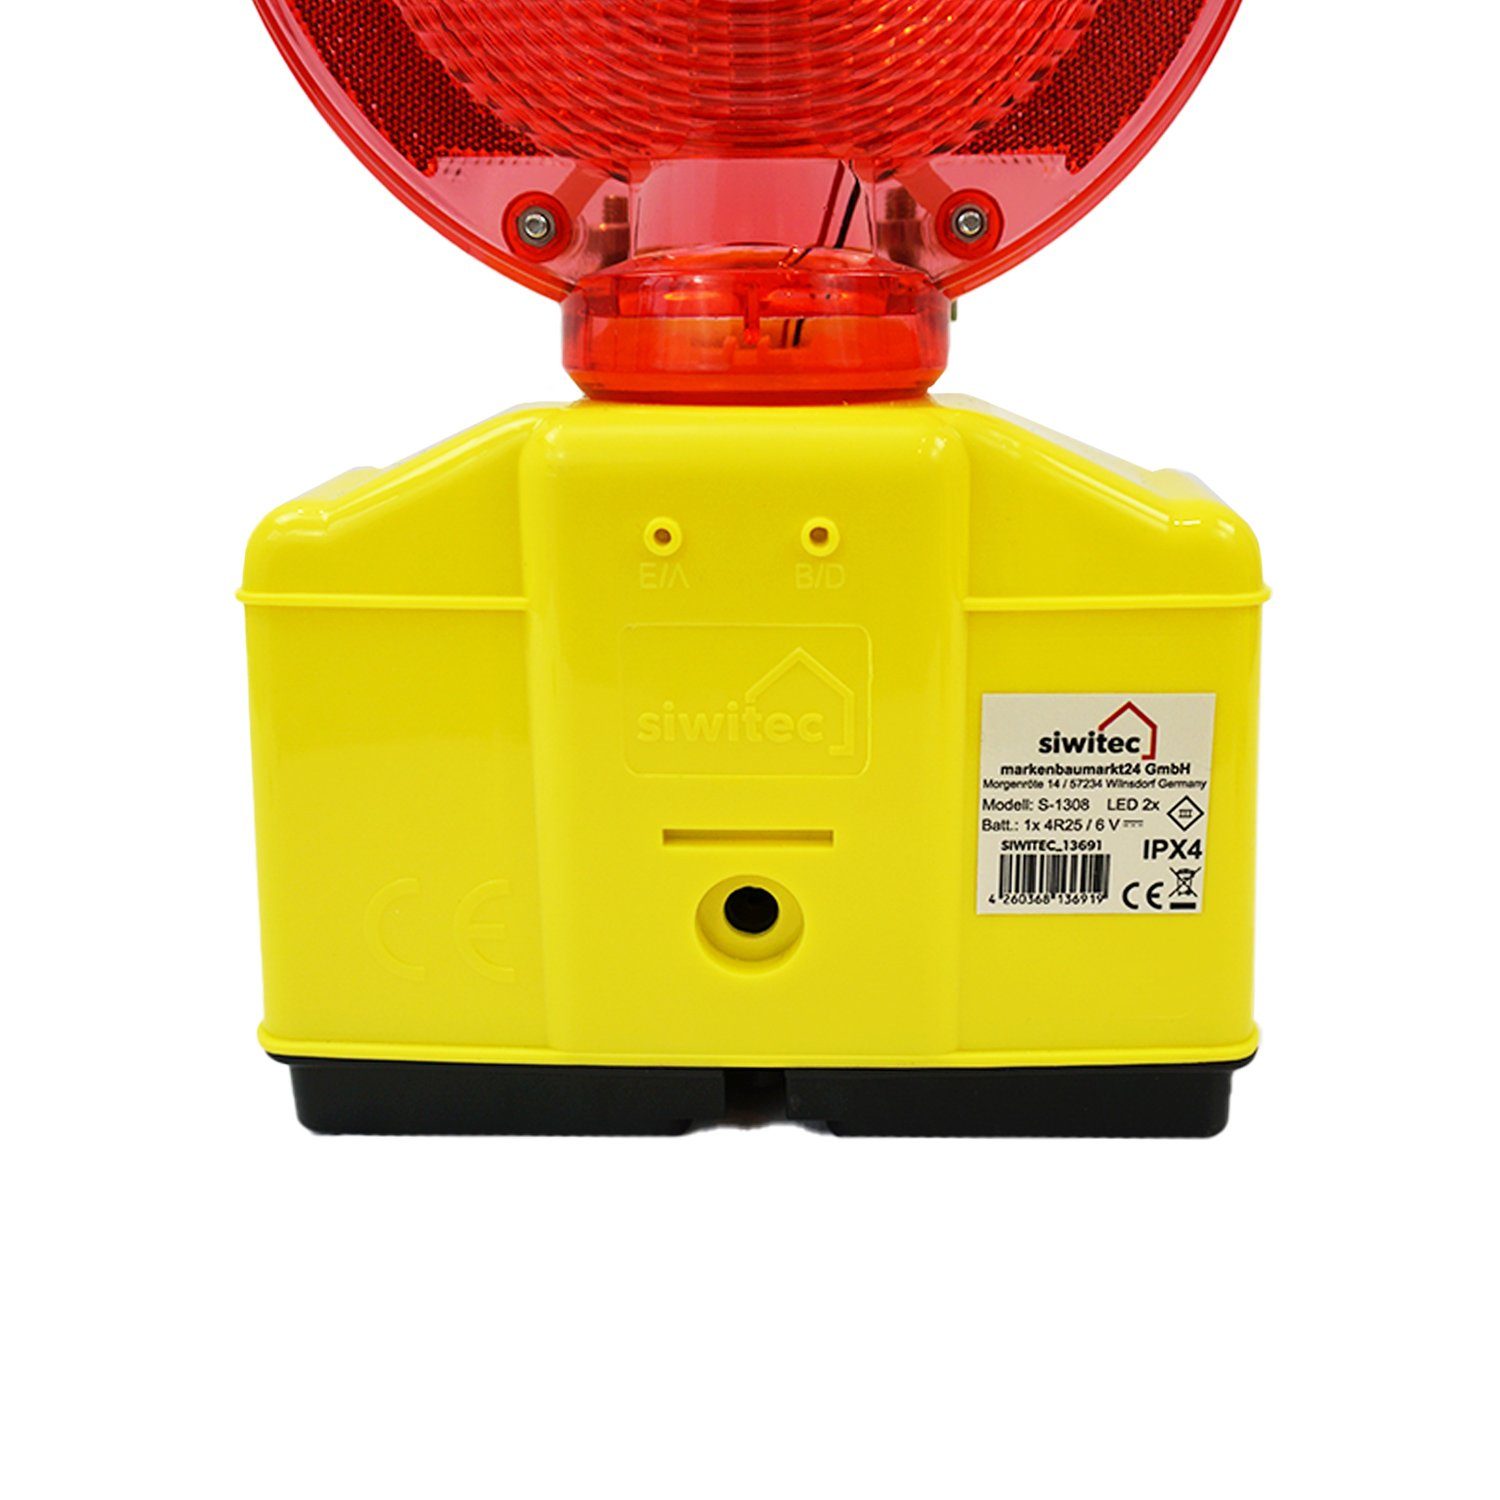 Dauerlichtfunktion, siwitec Dämmerungsautomatik mit und Rot/Transparent und Lampenschlüssel, LED Blink- Warnleuchte Dämmerungssensor Baustrahler